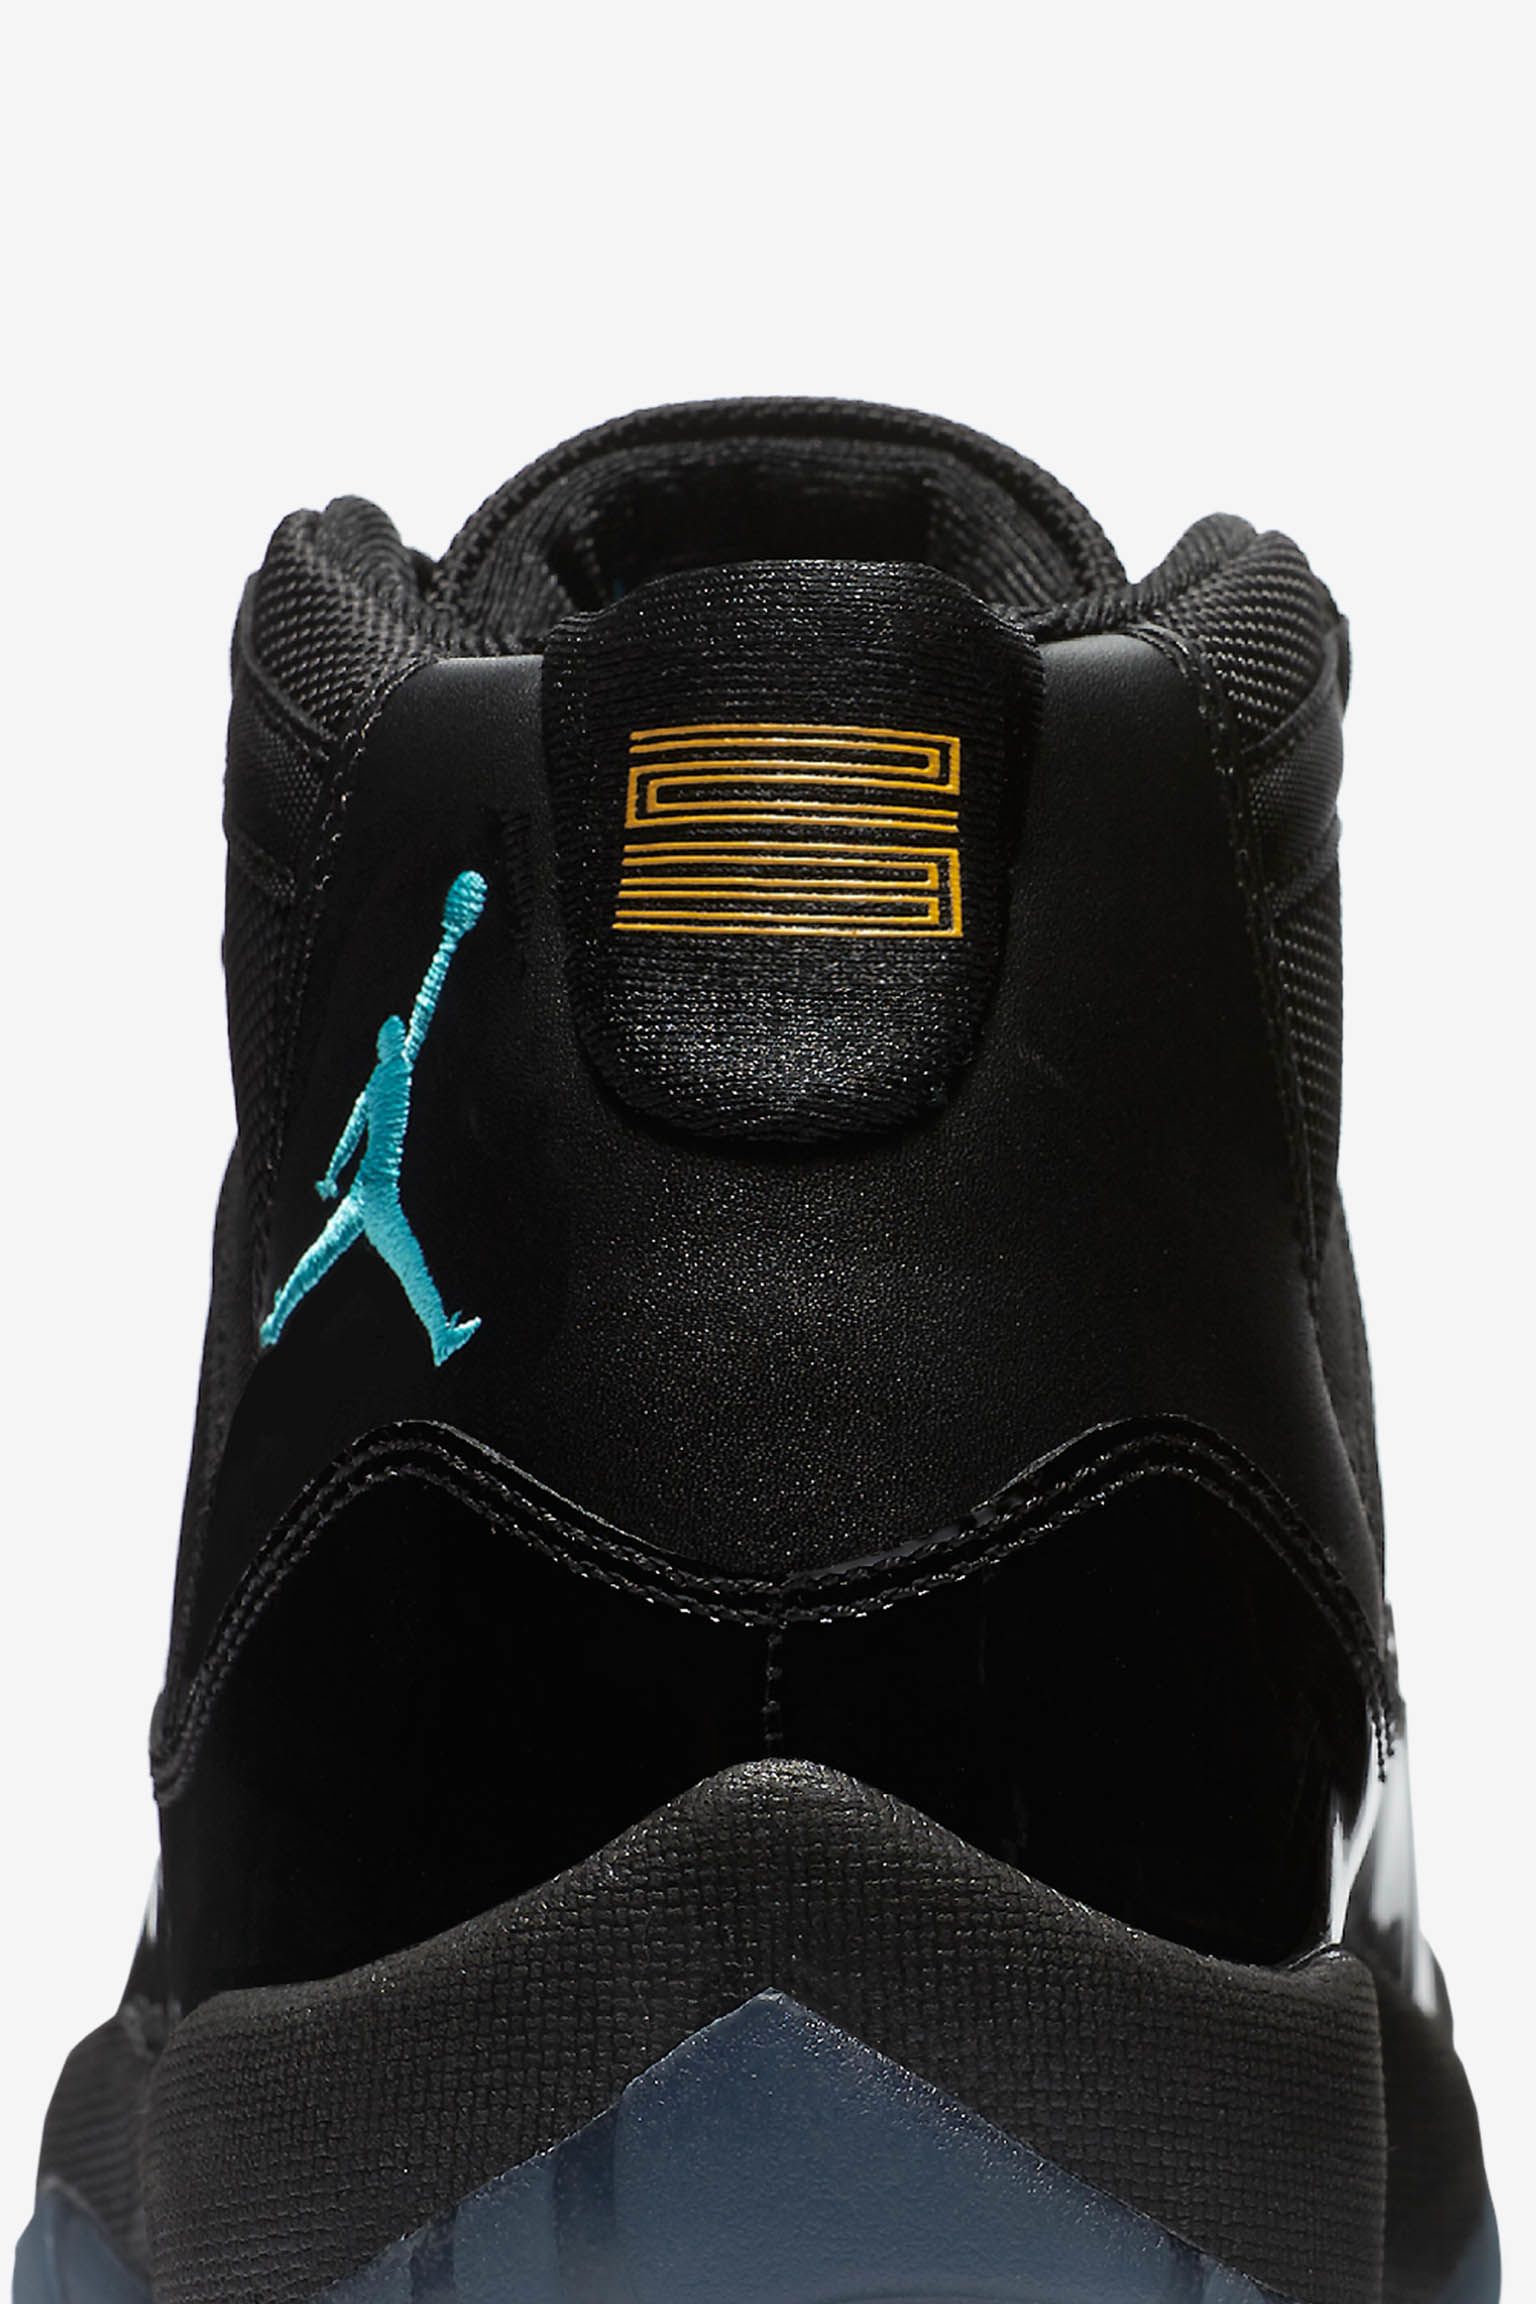 Air Jordan 11 Retro 'Gamma'. Release Date. Nike SNKRS